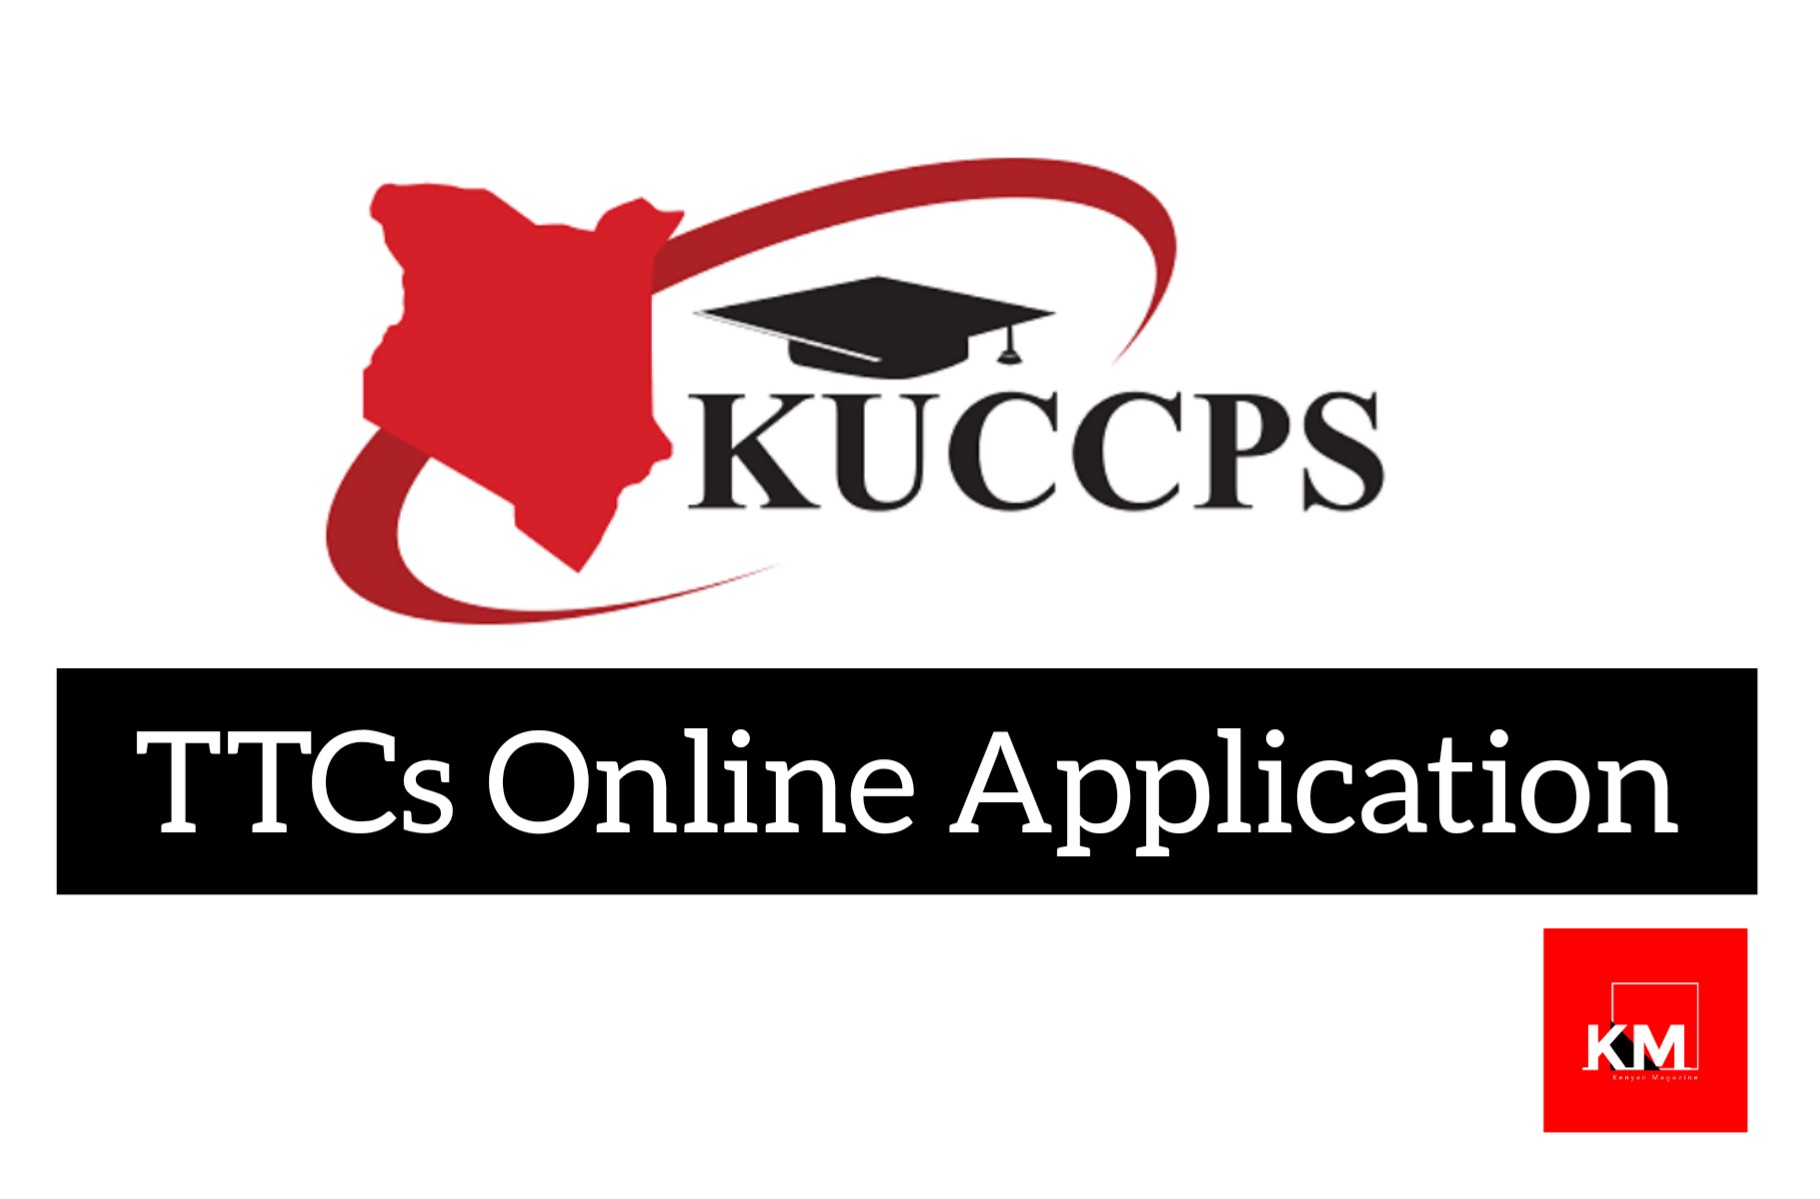 KUCCPS TTCs Online Application